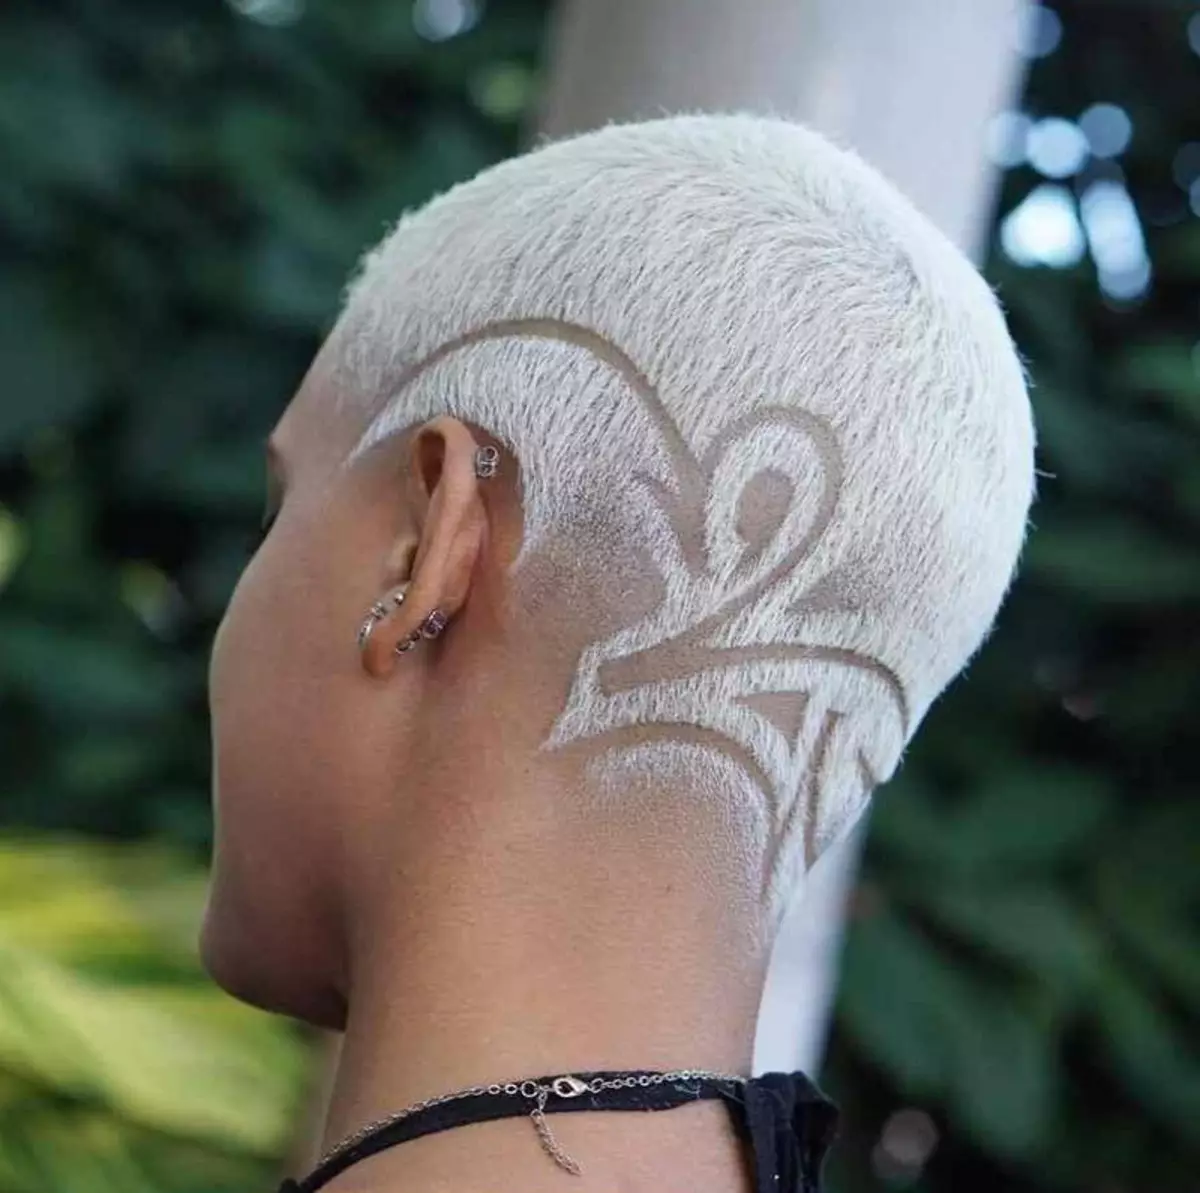 Τατουάζ μαλλιών (87 φωτογραφίες): Ιδέες για αγόρια, κορίτσια και άνδρες. Lightning on hair and web, άλλες επιλογές για παιδιά και ενήλικες περικοπές 14270_32